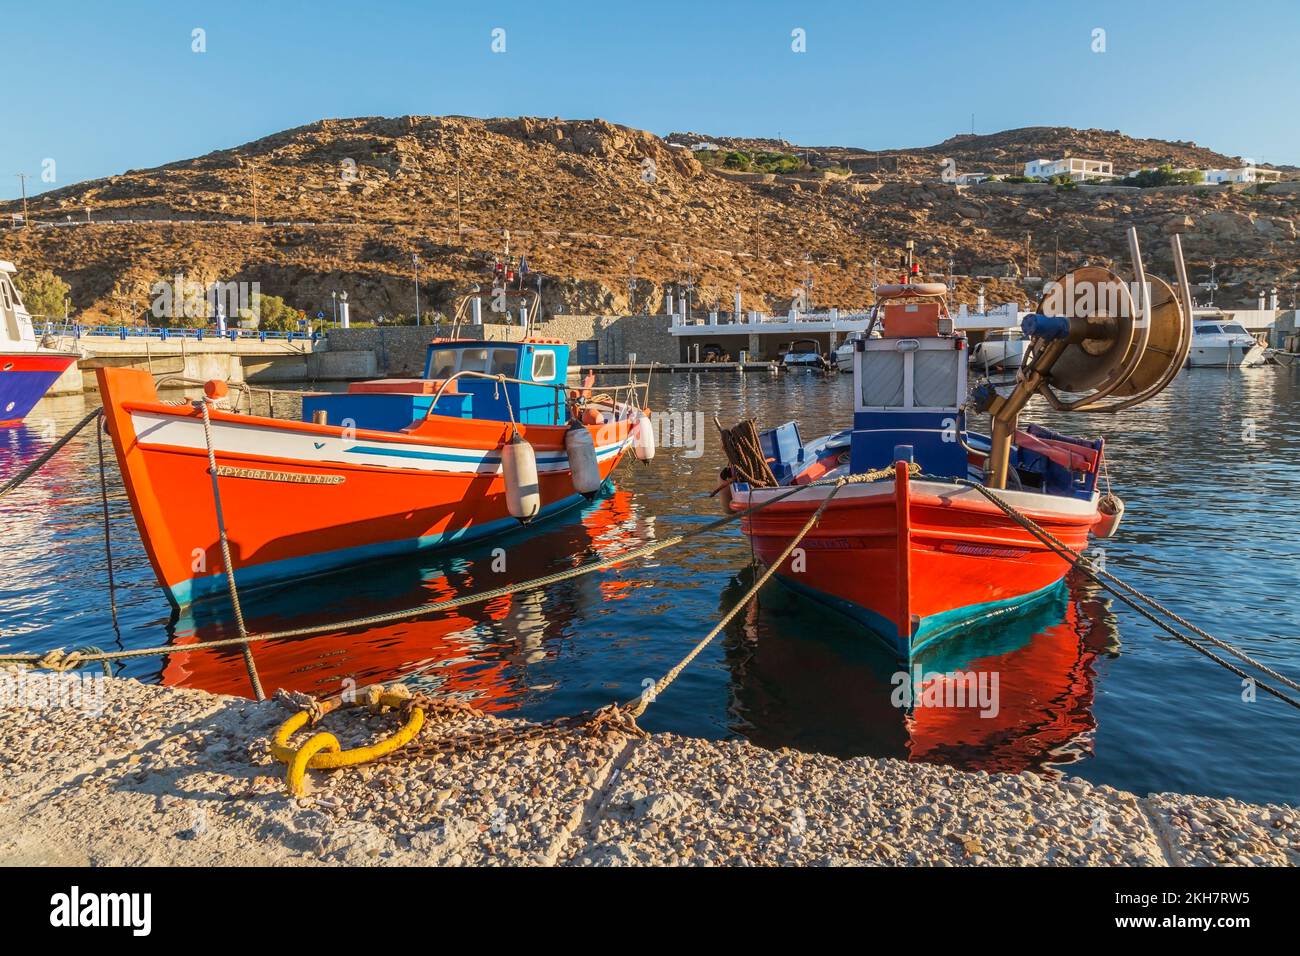 Petits bateaux de pêche grecs traditionnels orange, blanc et bleu avec ailes de bateau amarrés dans le nouveau port de plaisance de Mykonos au lever du soleil, île de Mykonos, Grèce. Banque D'Images